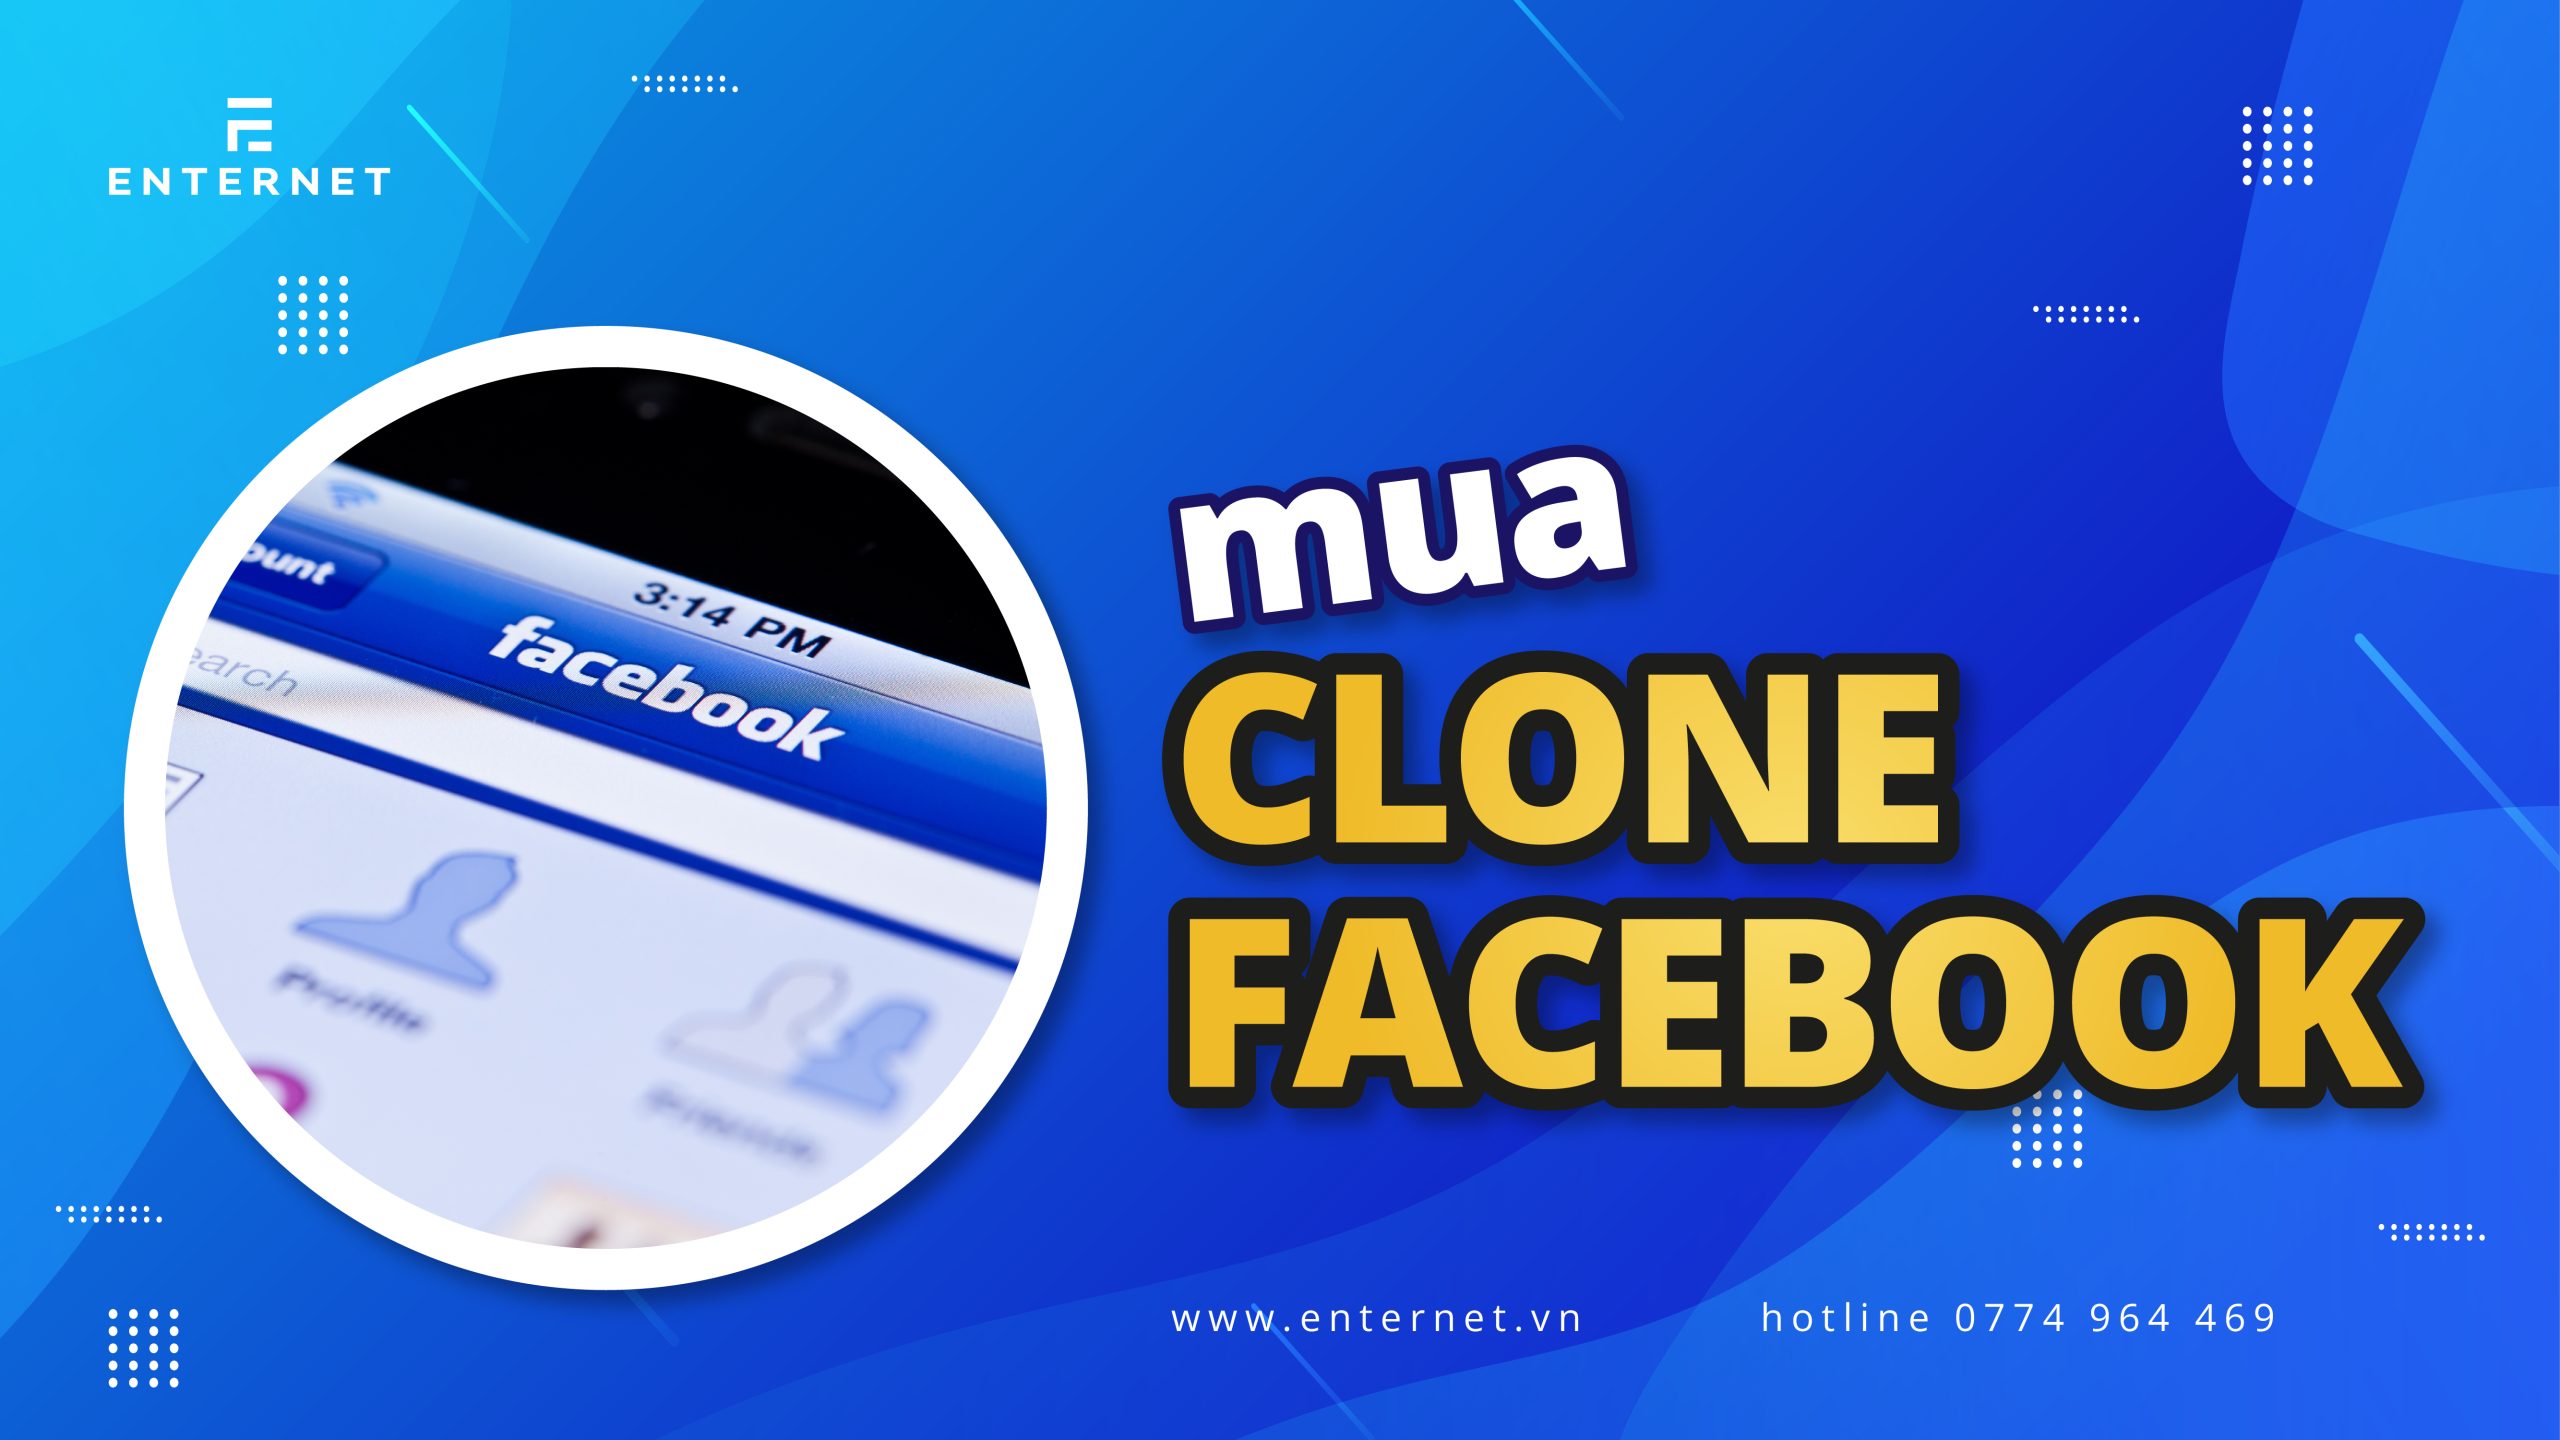 mua-clone-facebook